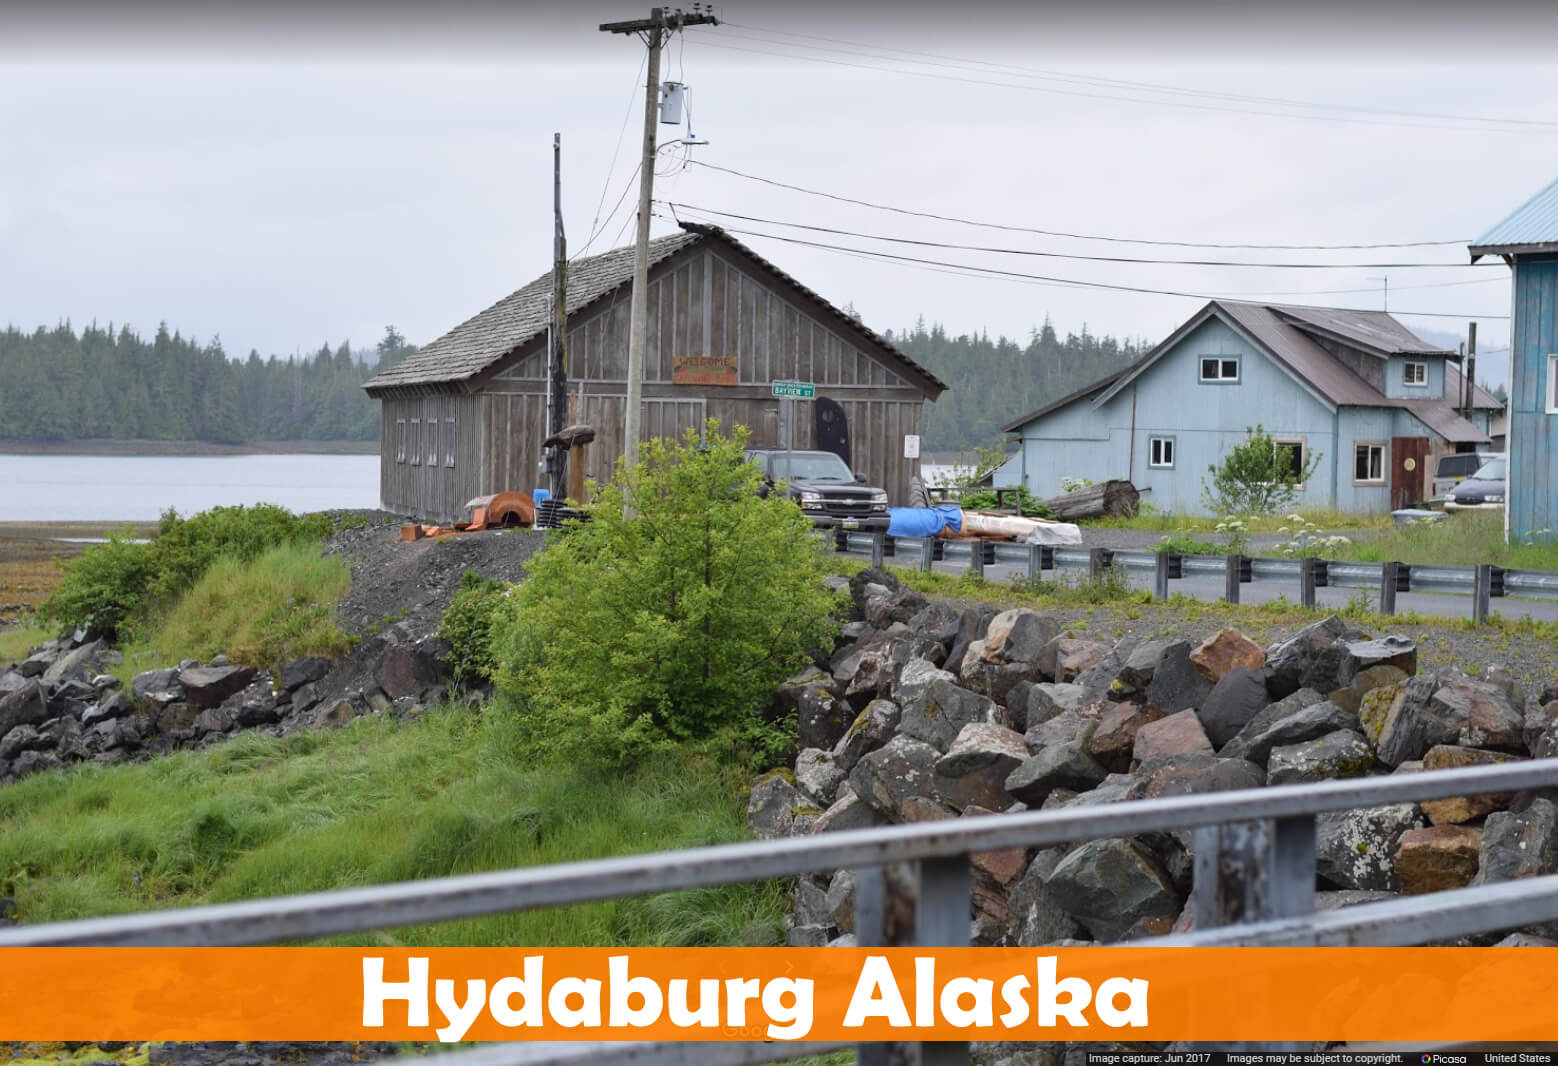 Hydaburg Alaska